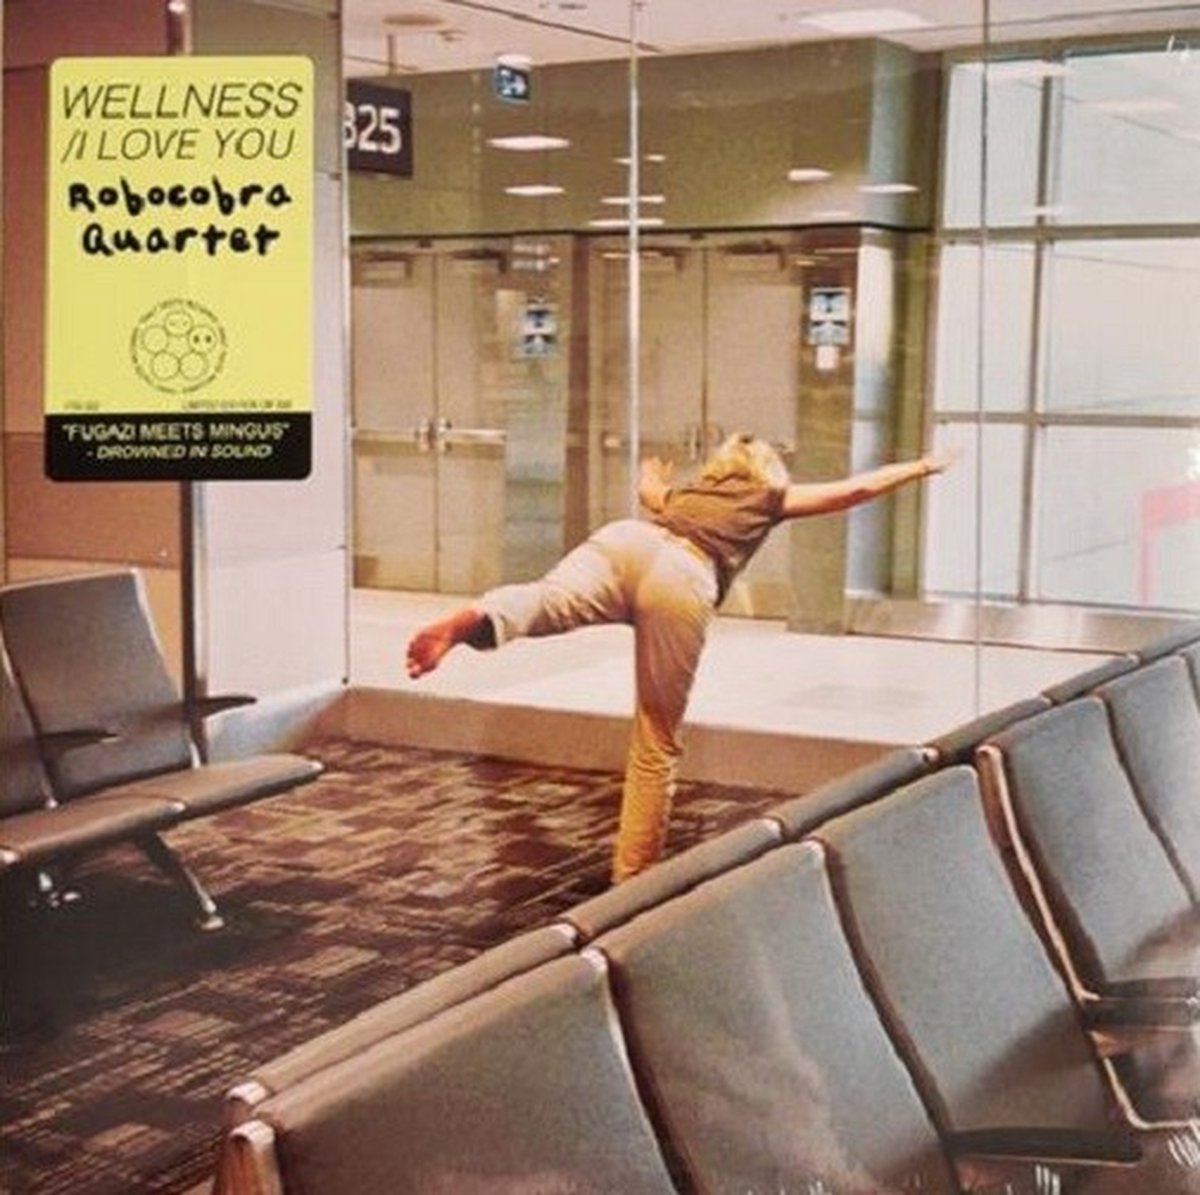 Robocobra Quartet - Wellness (7